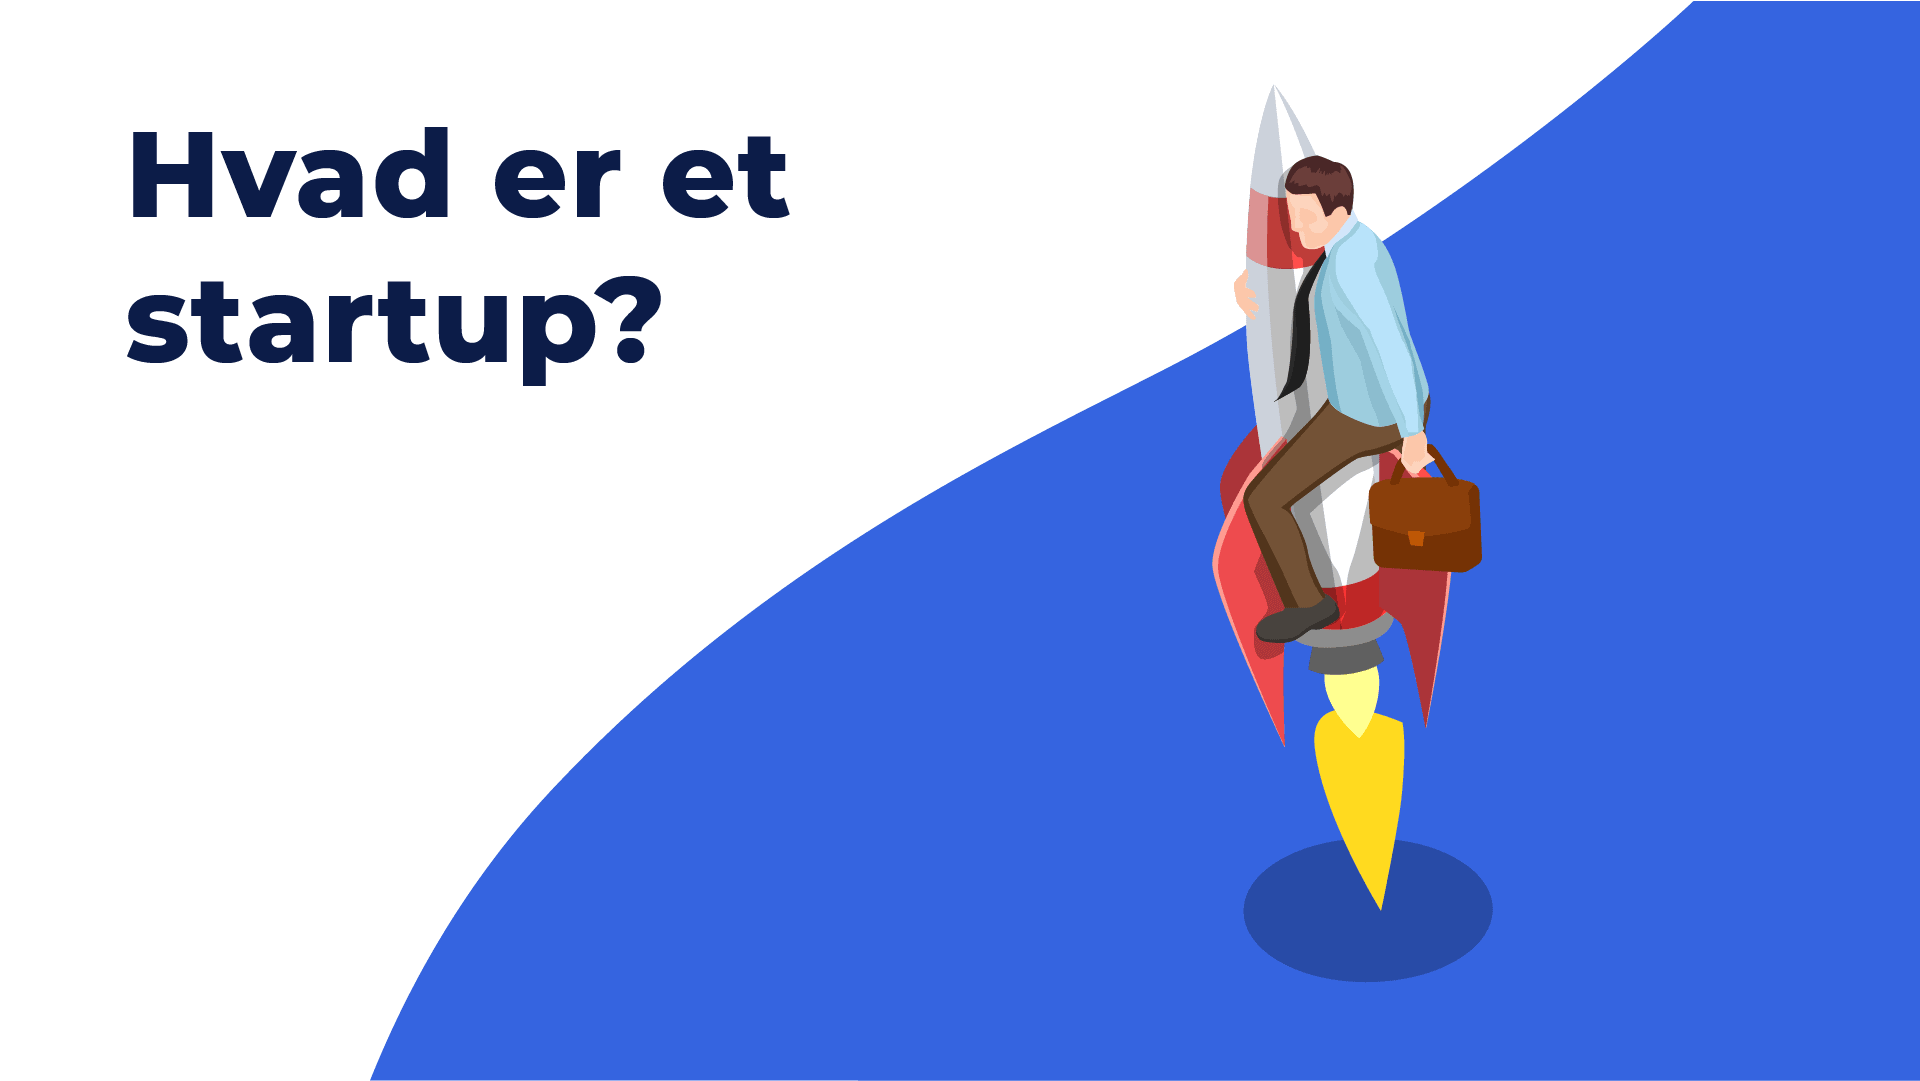 Featured image for “Hvad er et startup?”